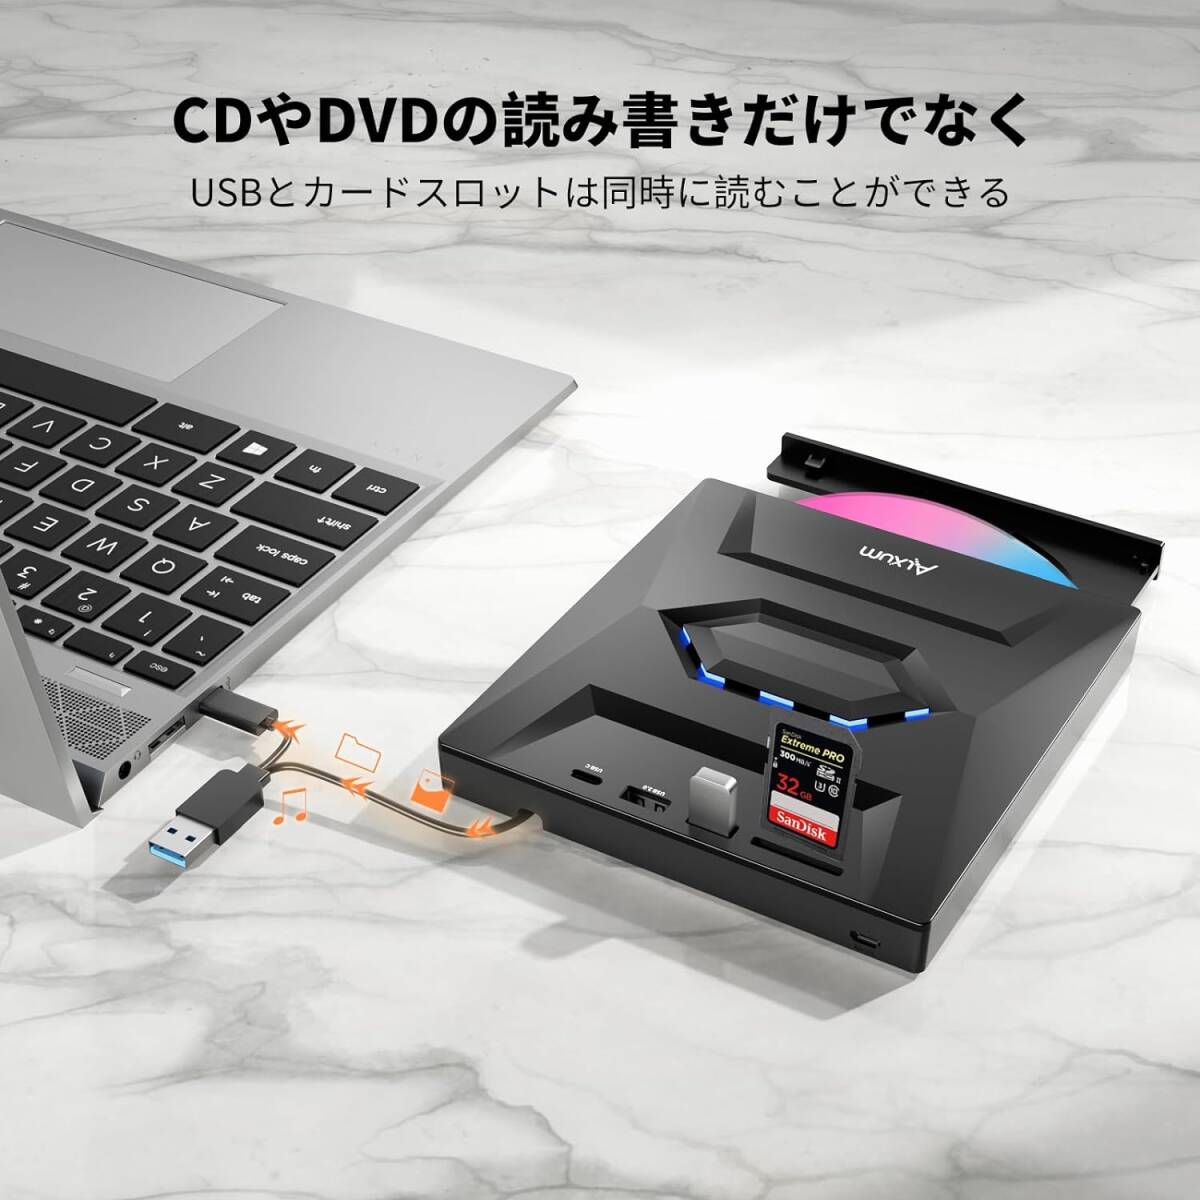 【未使用】Alxum ラップトップ用外付けCD DVDドライブ LM2302 Type-C USB 3.0ポータブルCDバーナーライター SDスロット＆USBポート付き